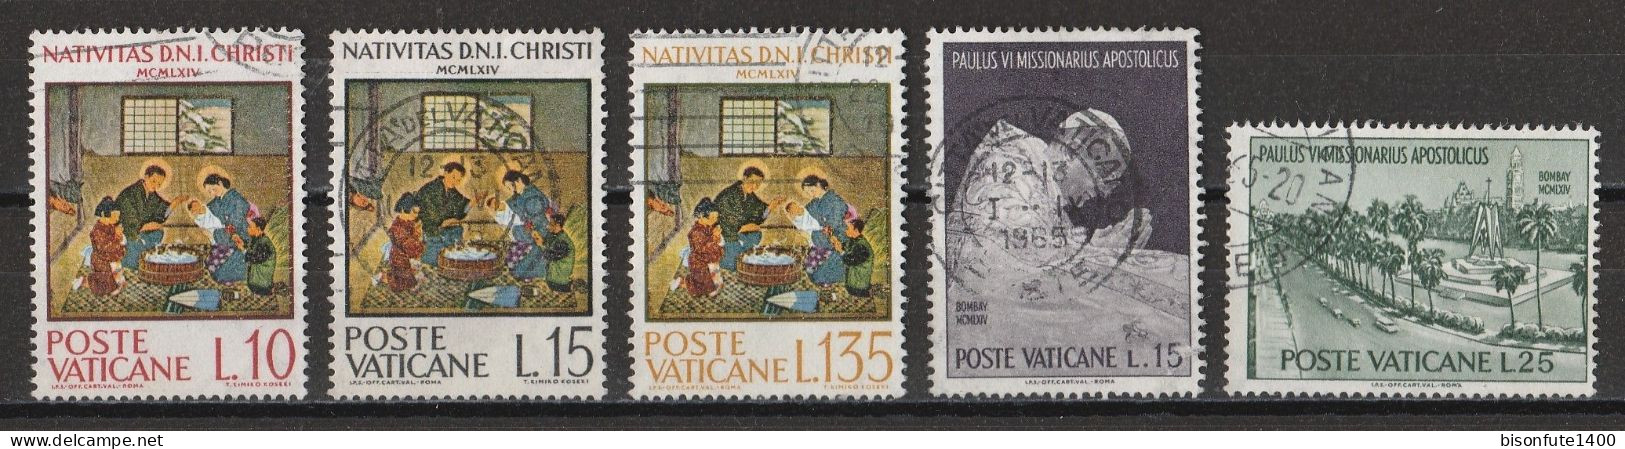 Vatican 1964 : Timbres Yvert & Tellier N° 415 - 416 - 417 - 418 - 419 - 420 Et 421 Oblitérés. - Oblitérés